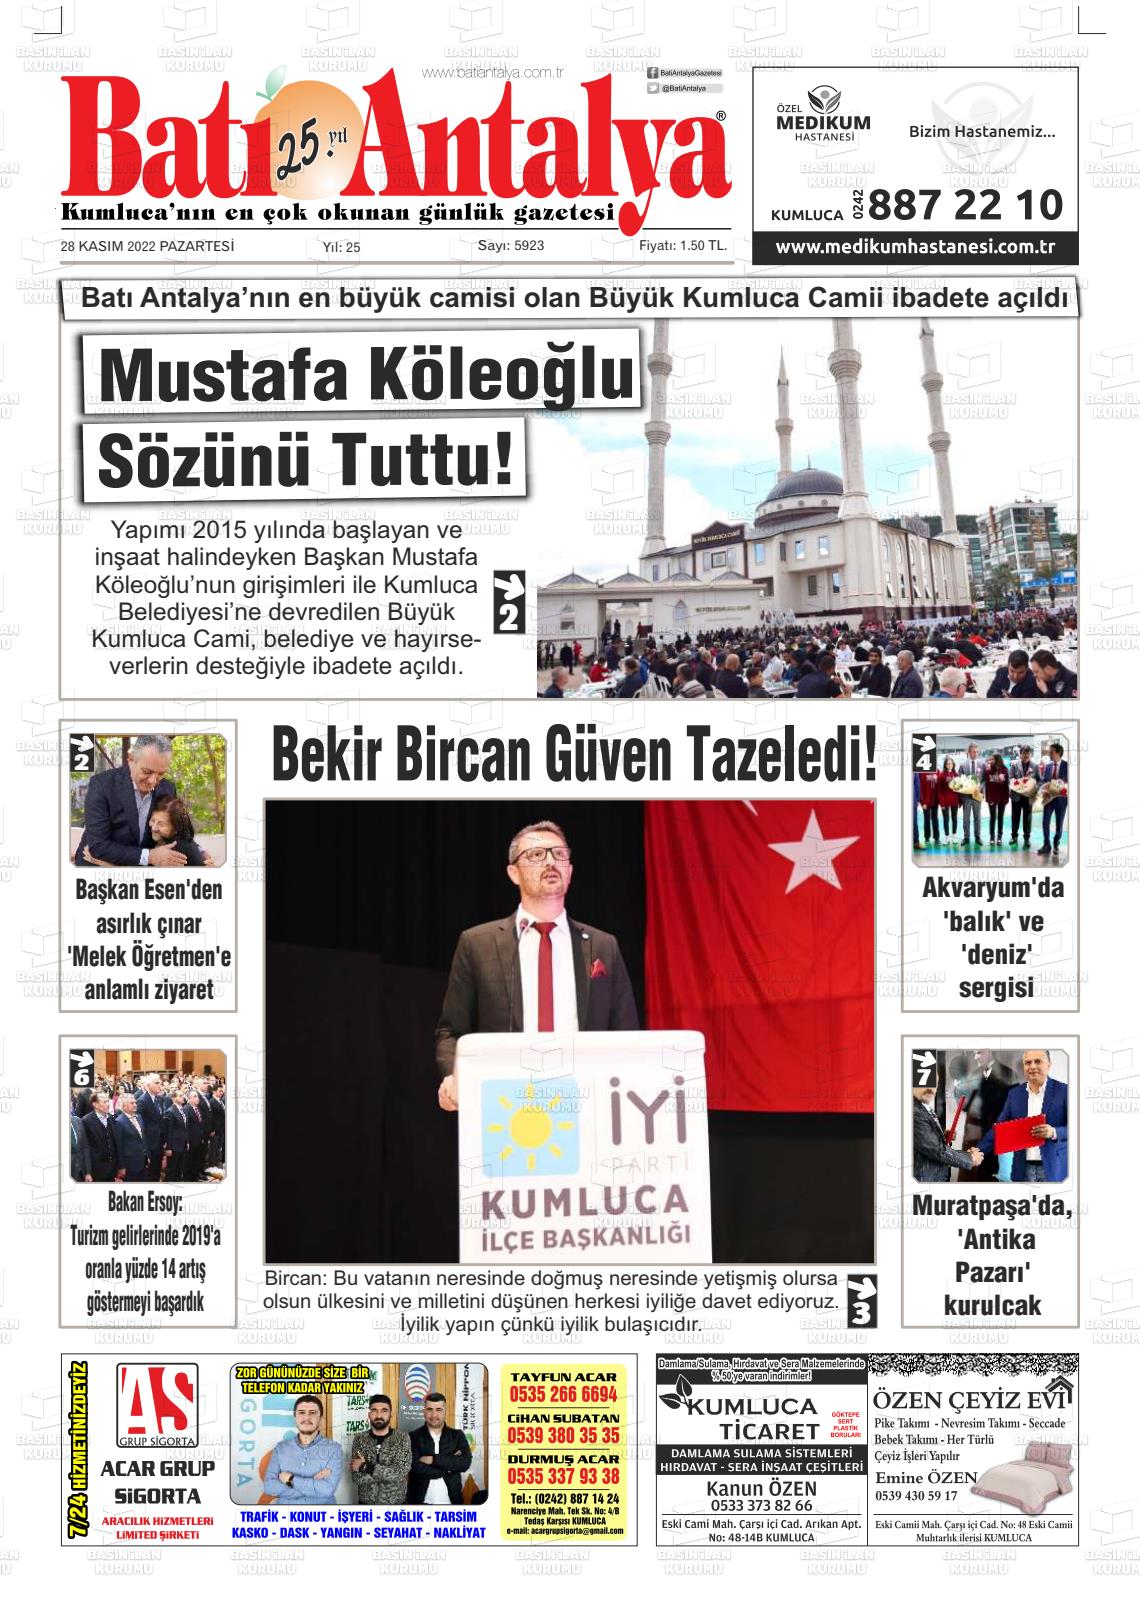 28 Kasım 2022 Batı Antalya Gazete Manşeti